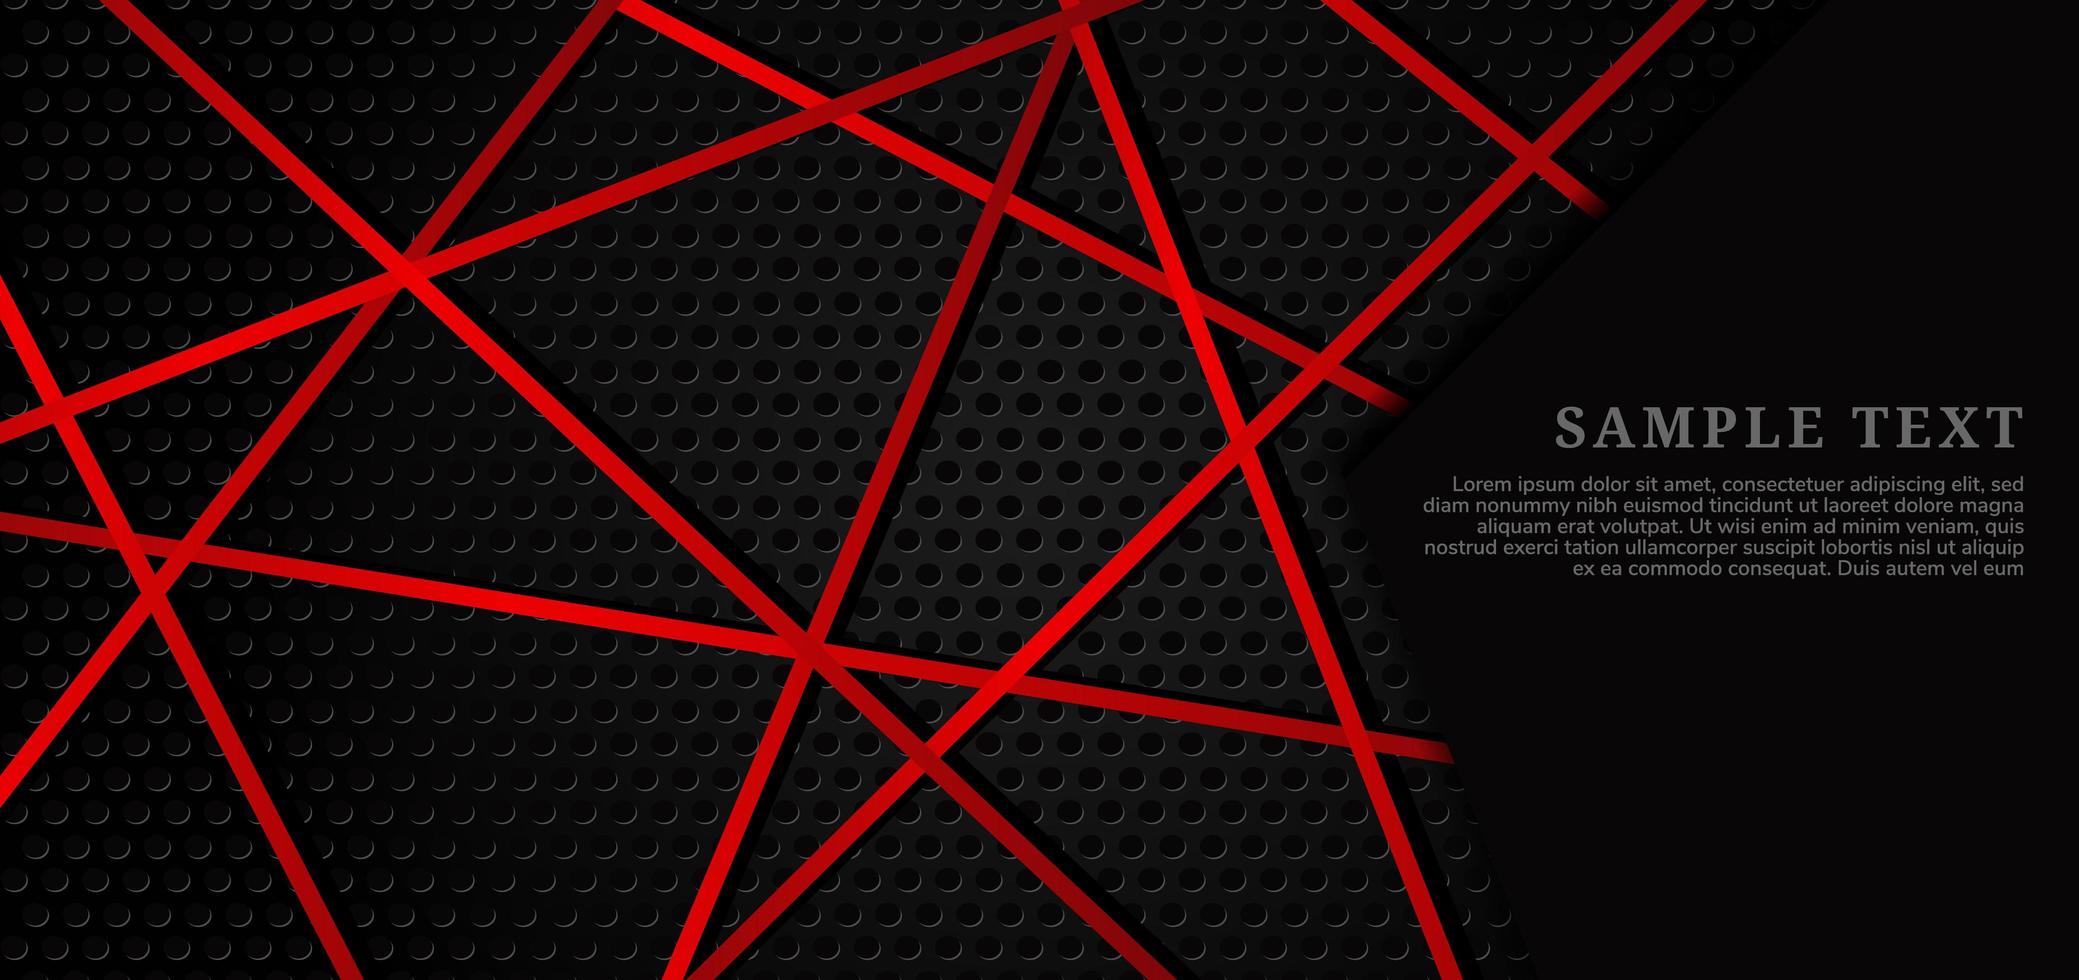 zwart metalen rooster textuur met kruisende rode lijnen vector